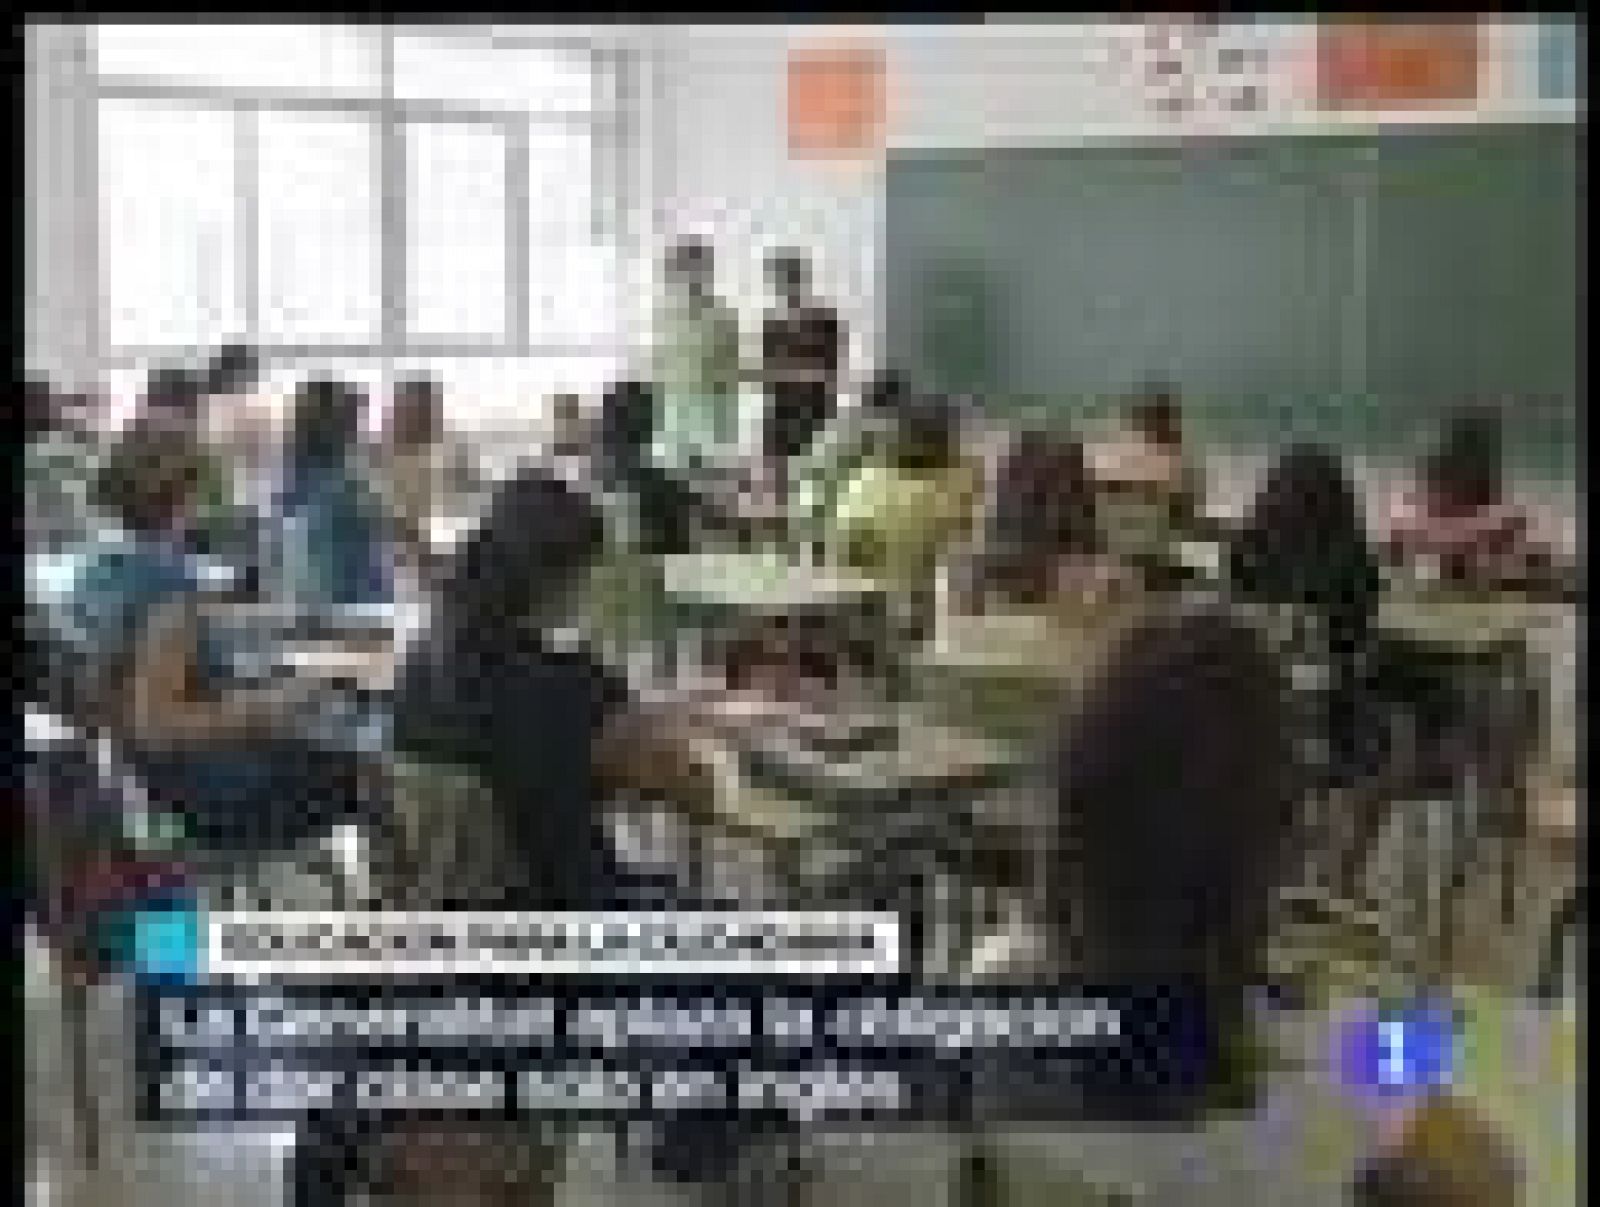 Los profesores valencianos podrán decidir en qué idioma dan la clase de Educación para la Ciudadanía.